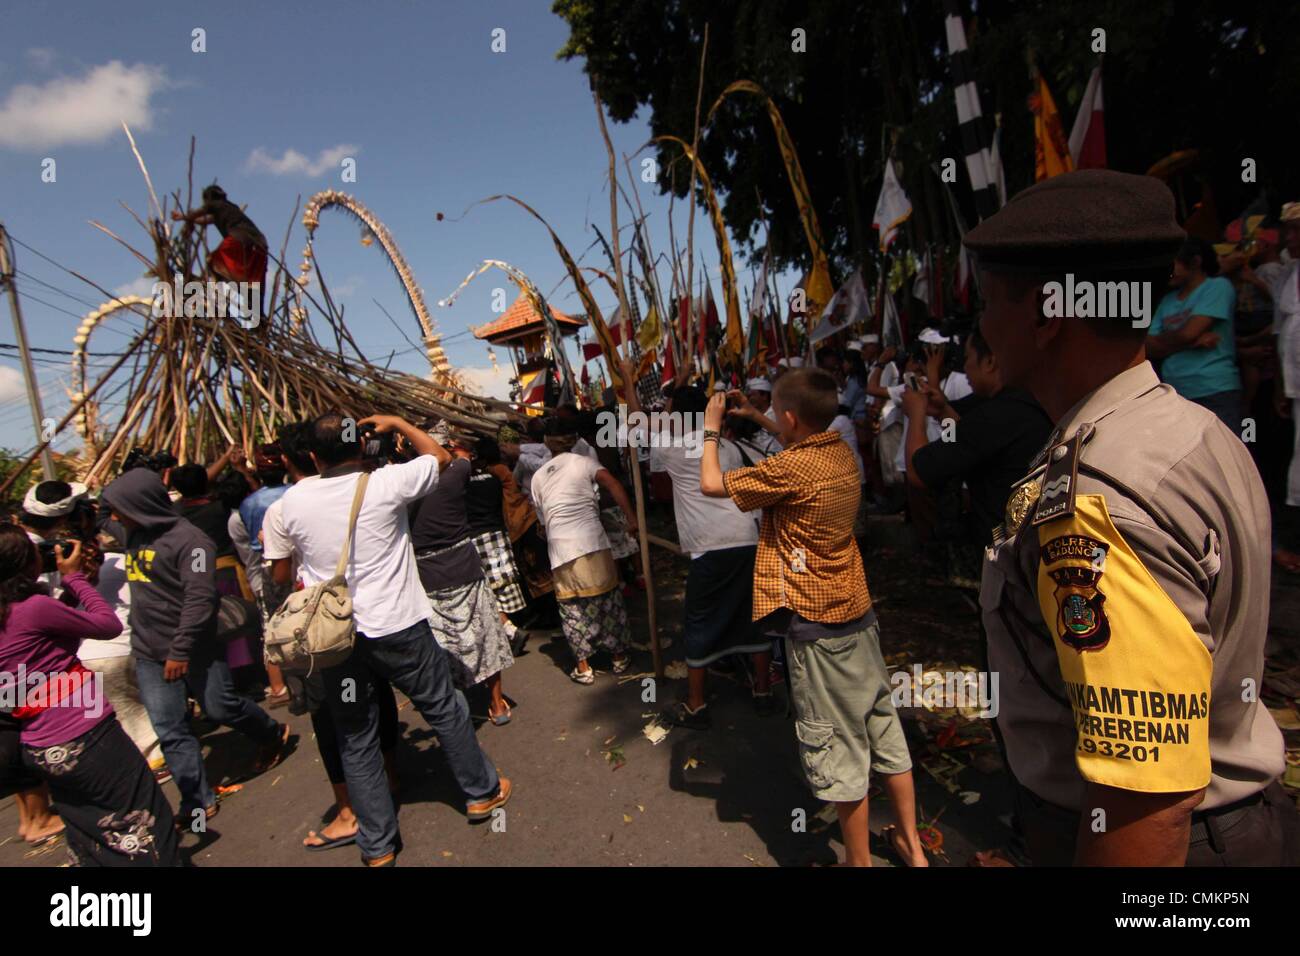 Bali, Indonesien. 2. November 2013. Bali Völker feiert Mekotek Festival am 3. November 2013 in Bali, Indonesia.Tradition Mekotekan oder oft als Mekotek ist eine übliche Tradition gehalten von Hindus, die am Tag fest im Dorf Munggu, Badung Regentschaft, Bali, Indonesien durchgeführt. Mekotekan Tradition ist eine Ritual, das Holz in der Regel verwendet bedeutet die am weitesten verbreitete Art der Pulet, die um den Sieg des Dharma (Tugend) feiern zusammen gespielt, gegen Adharma (böse) Credit: Sijori Images/ZUMAPRESS.com/Alamy Live News Stockfoto